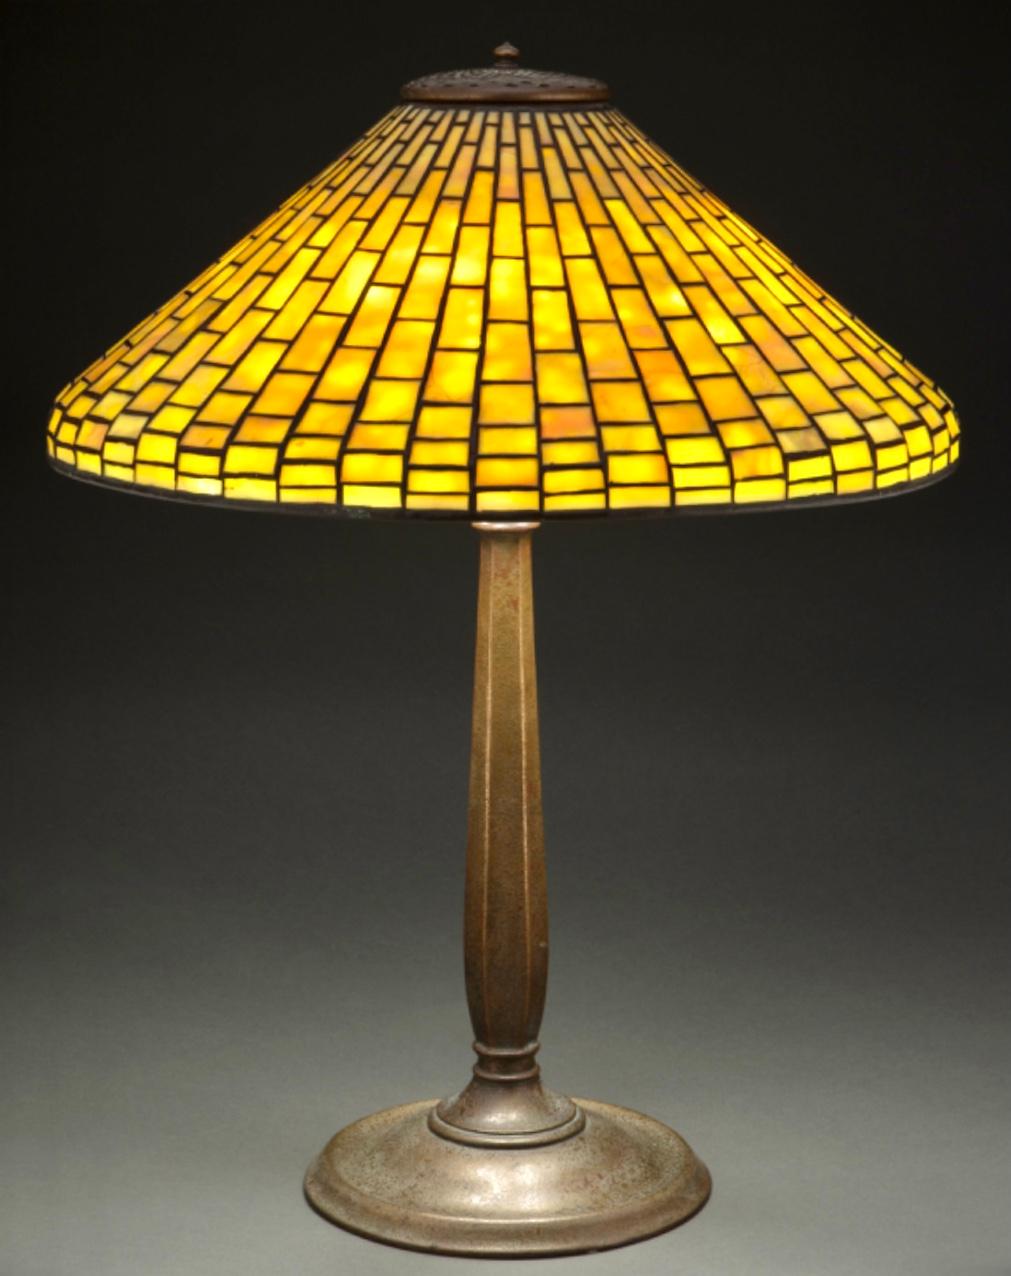 Geometrische Tischlampe aus Bleiglas und patinierter Bronze der Tiffany Studios, um 1910. Jugendstil-Klassiker mit Art-Déco-Design. Attraktive Orangenschalenstruktur mit leichter Vergoldung und rot gefärbtem Bronzesockel, gekrönt von einem